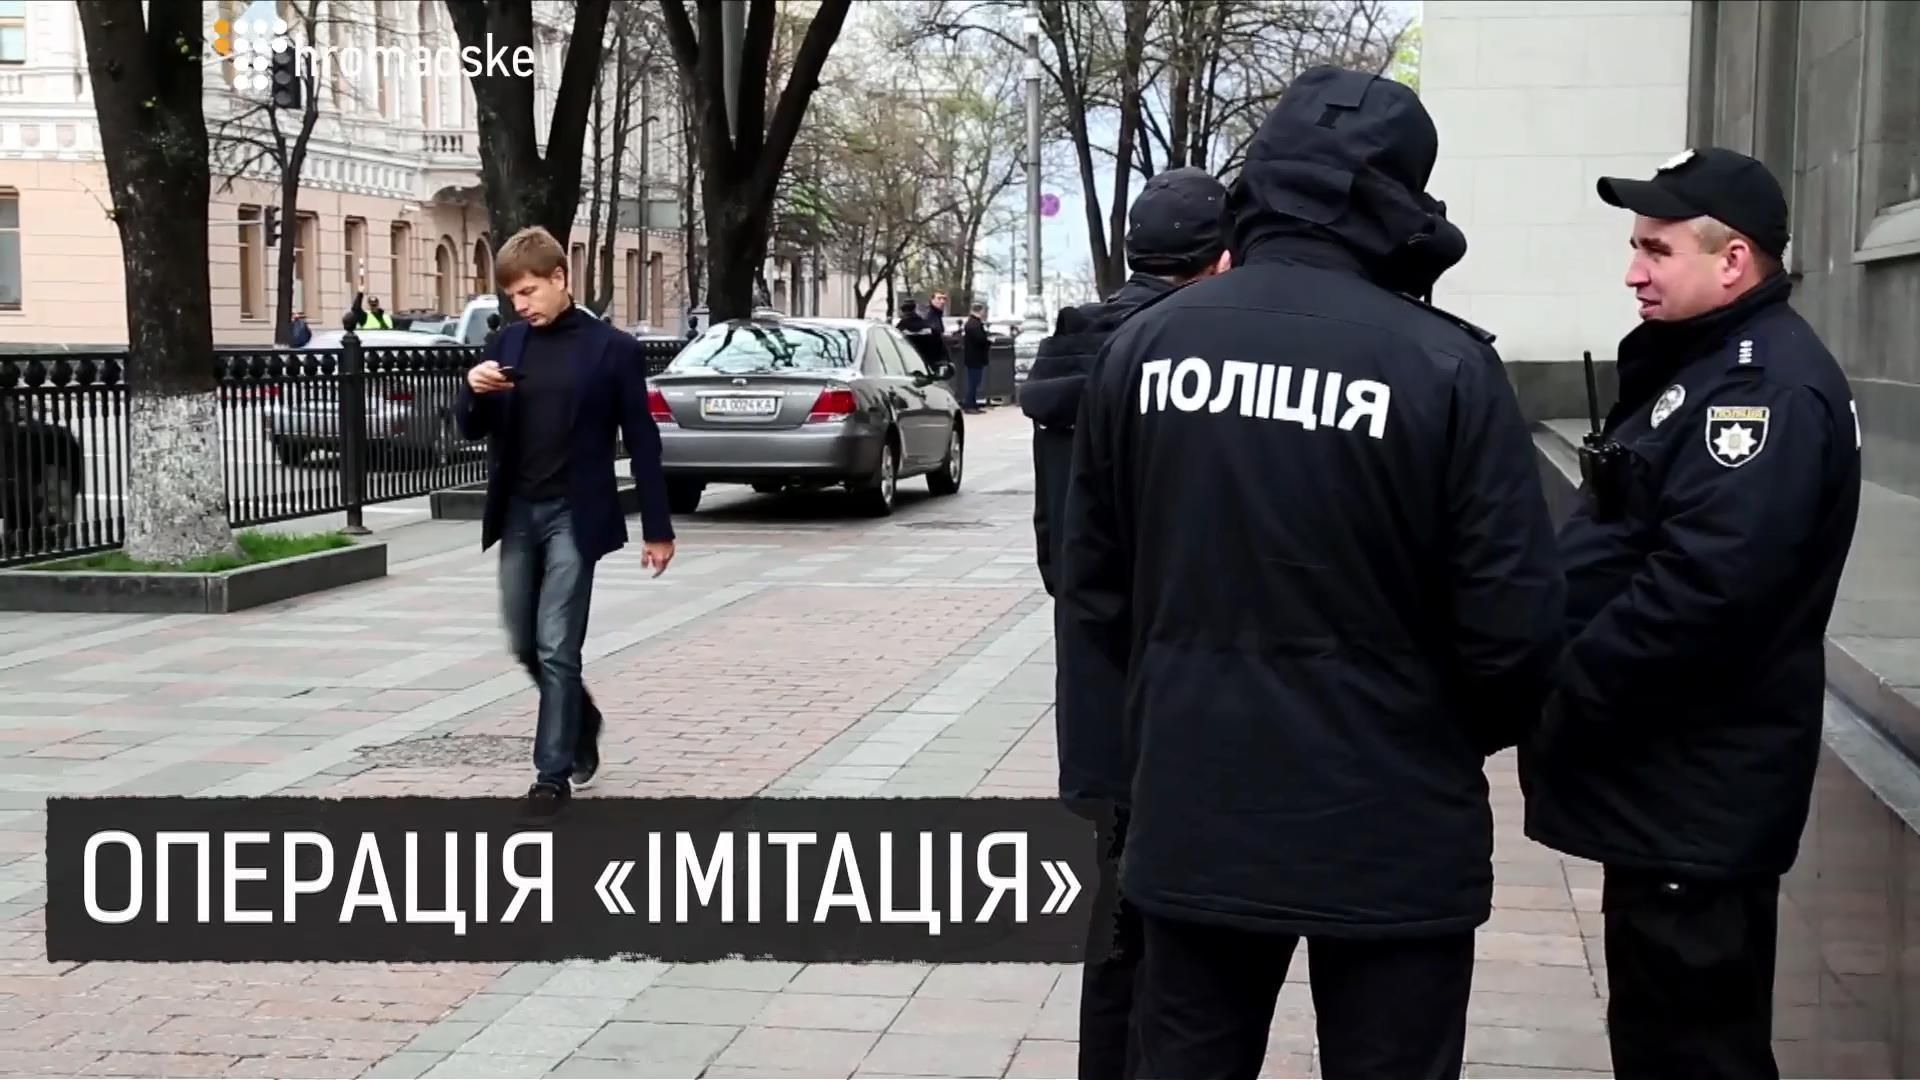 Похищение нардепа Гончаренко: что произошло на самом деле